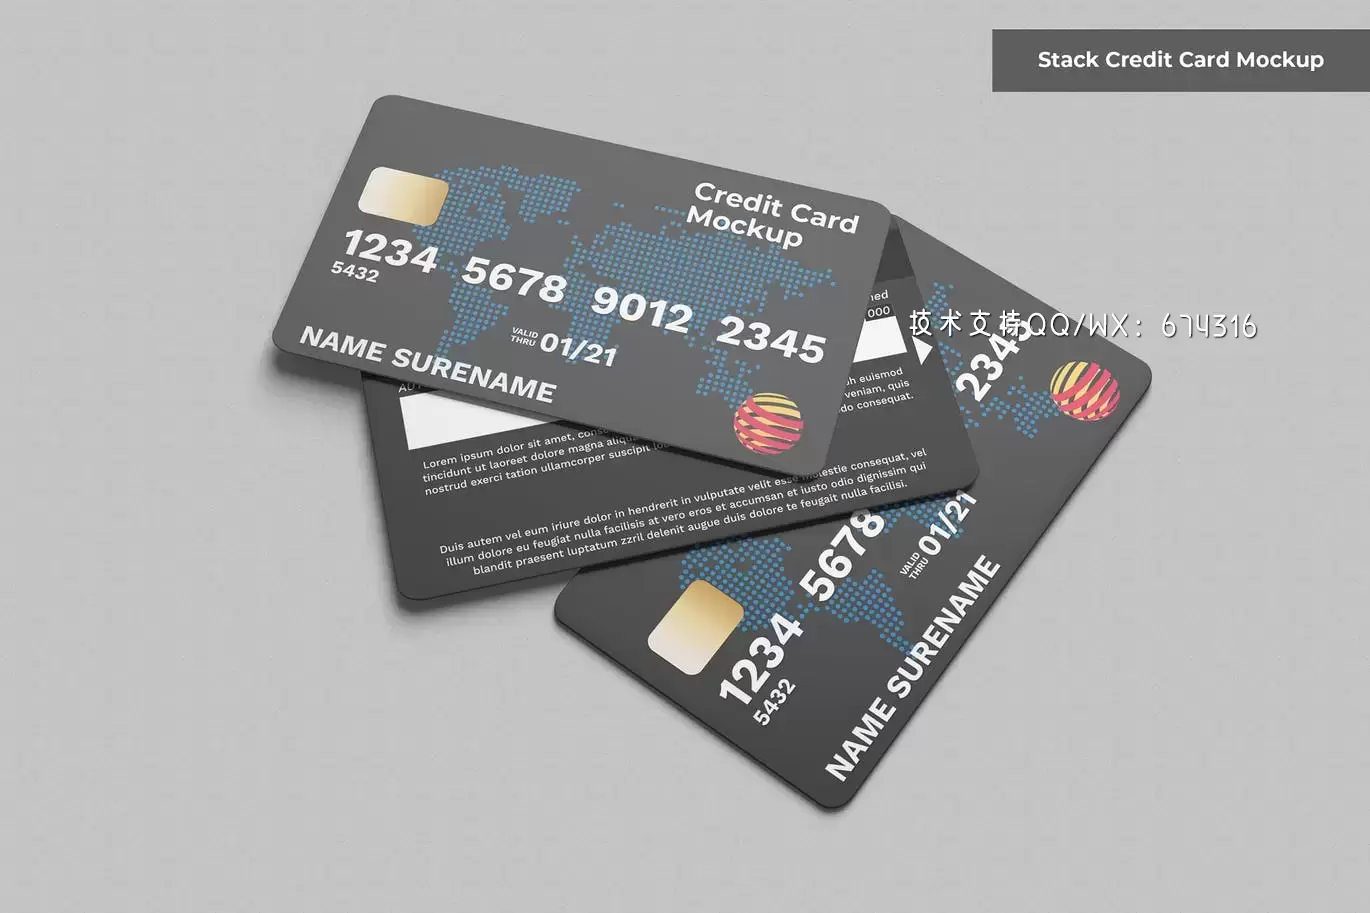 高端堆叠信用卡模型下载